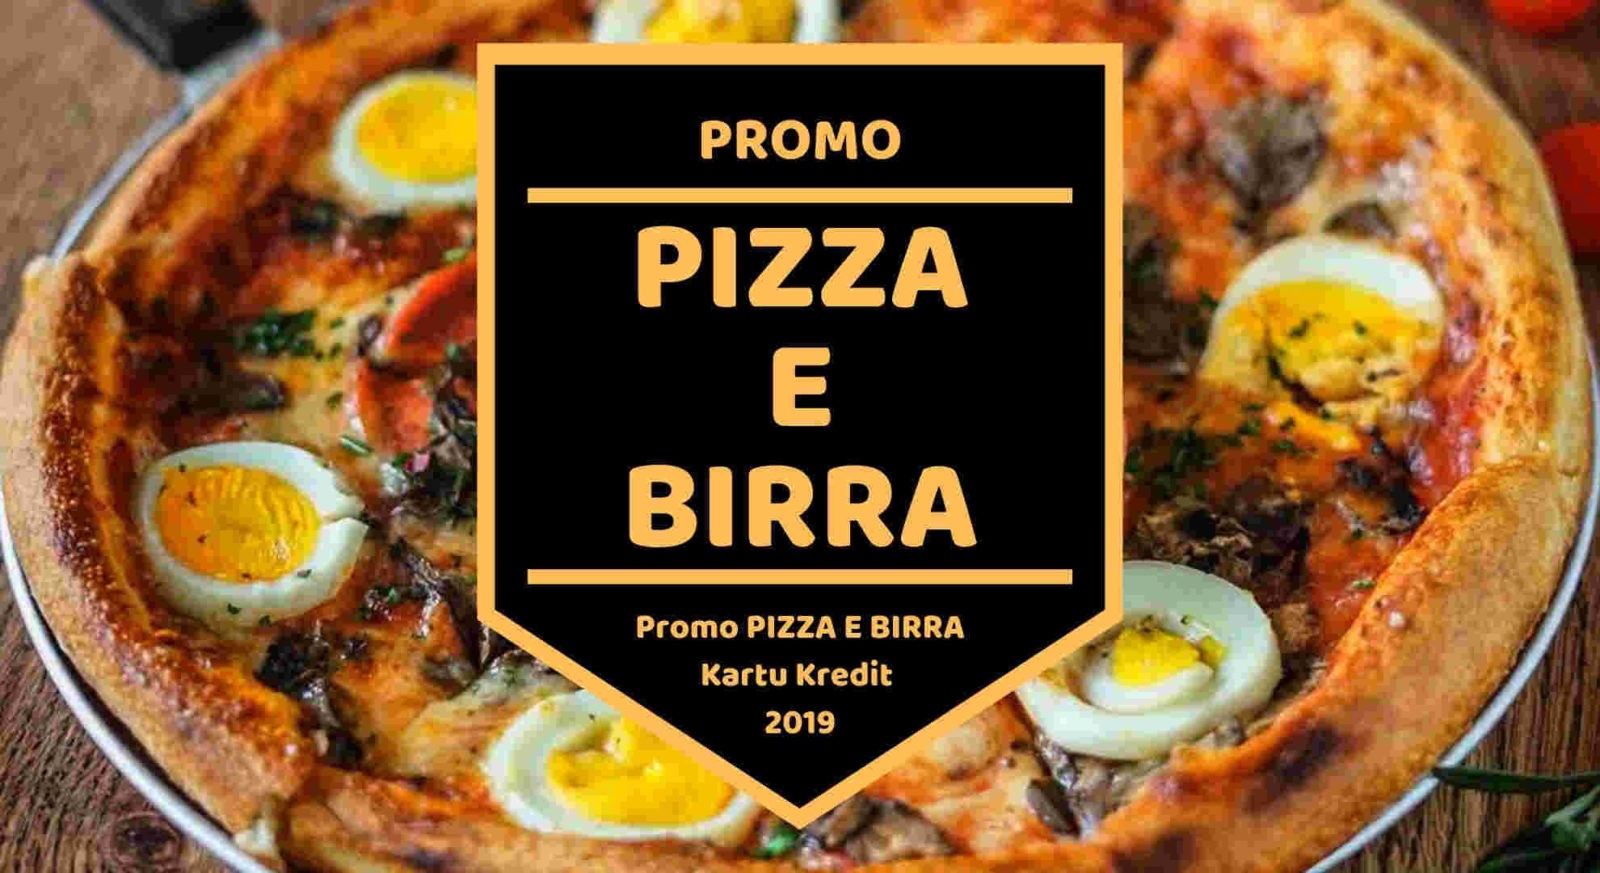 Promo Pizza E Birra